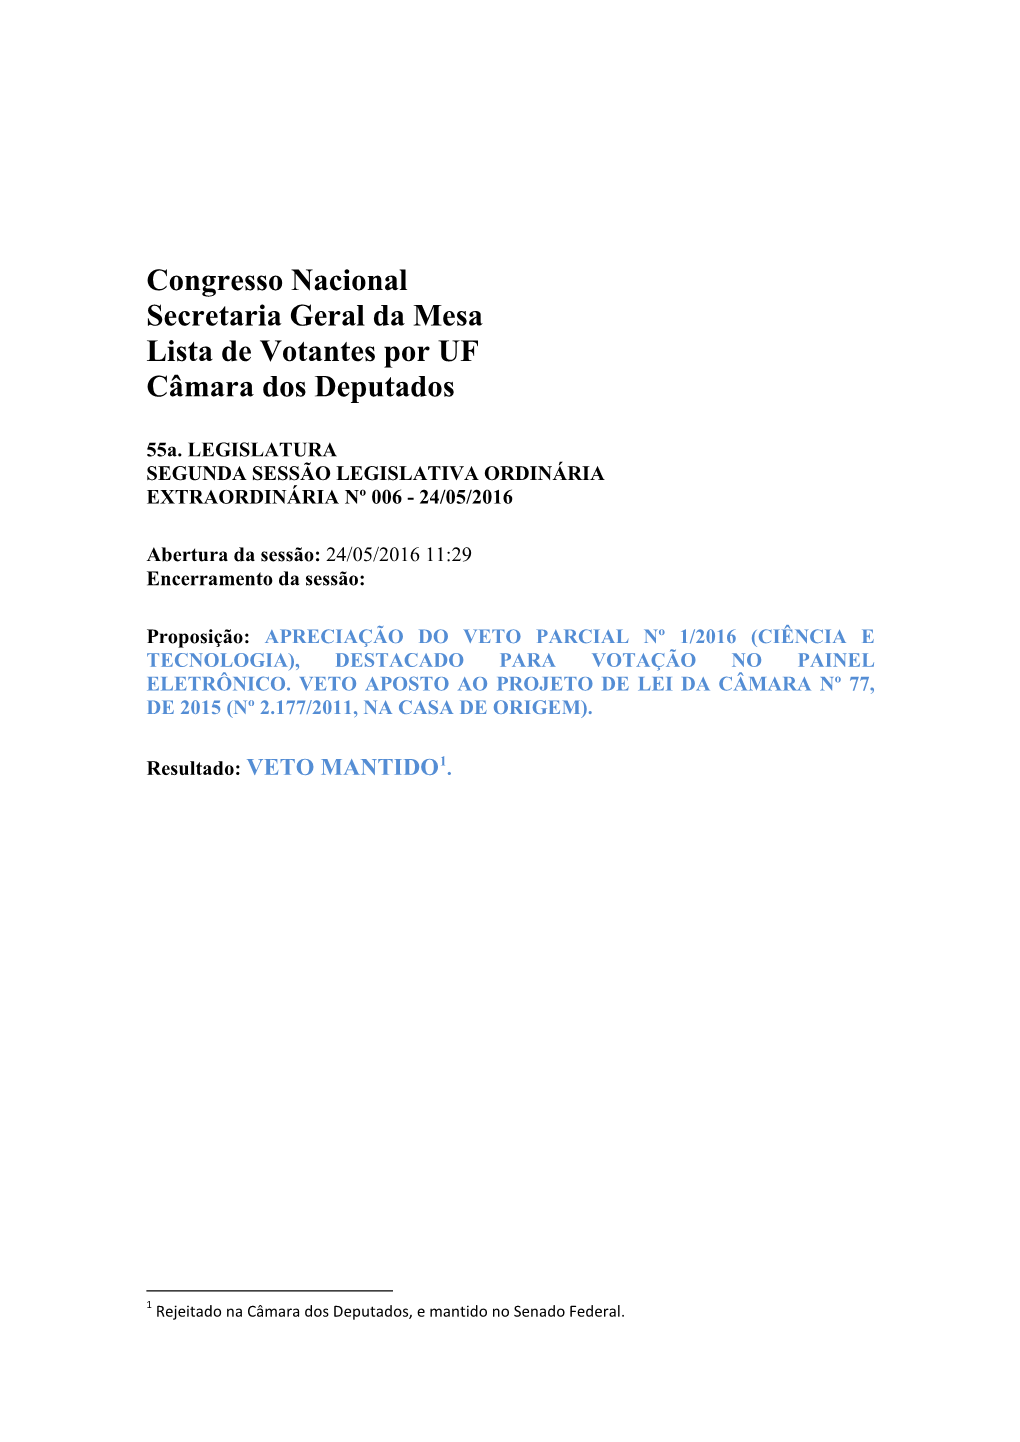 Congresso Nacional Secretaria Geral Da Mesa Lista De Votantes Por UF Câmara Dos Deputados